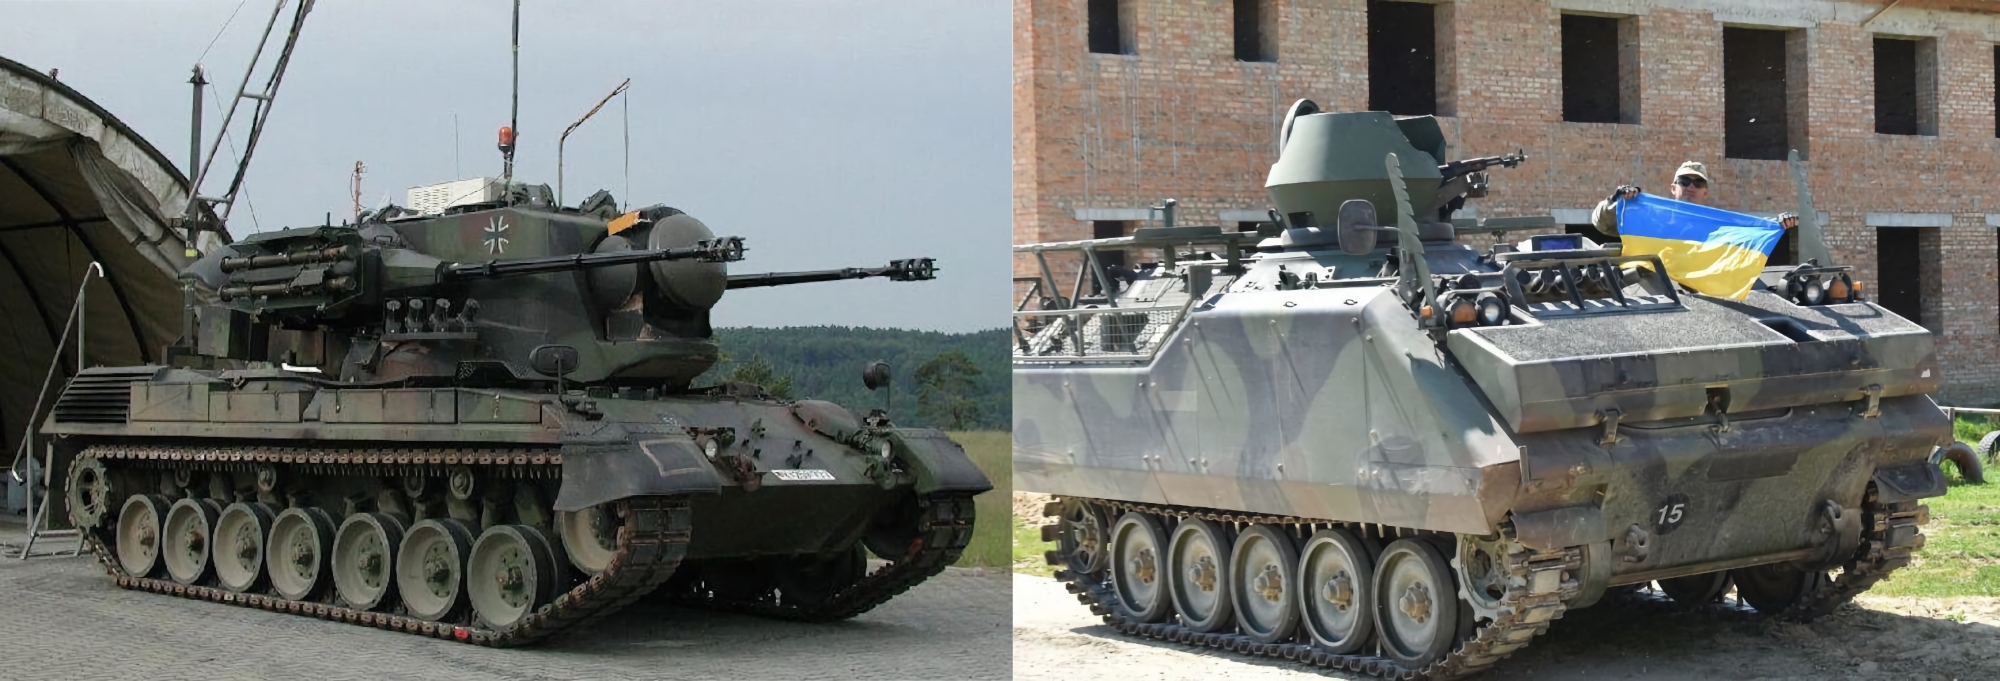 Niemcy przekazały Ukrainie jeszcze 3 samobieżne działa przeciwlotnicze Gepard i 11 gąsienicowych transporterów opancerzonych M113